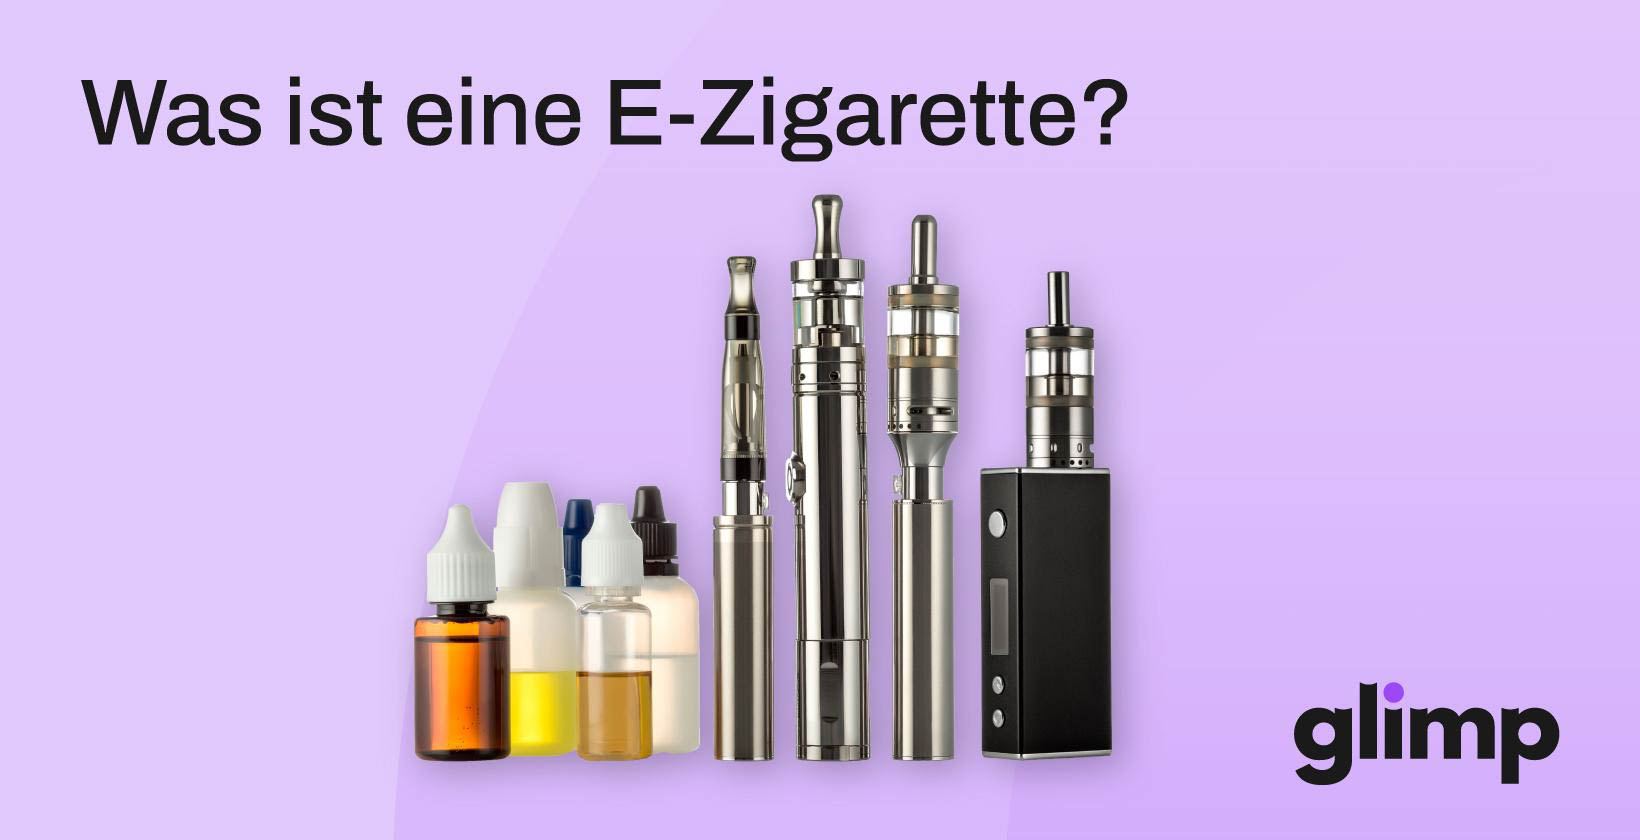 E-Zigaretten ohne Nikotin können die Blutgefäße schädigen